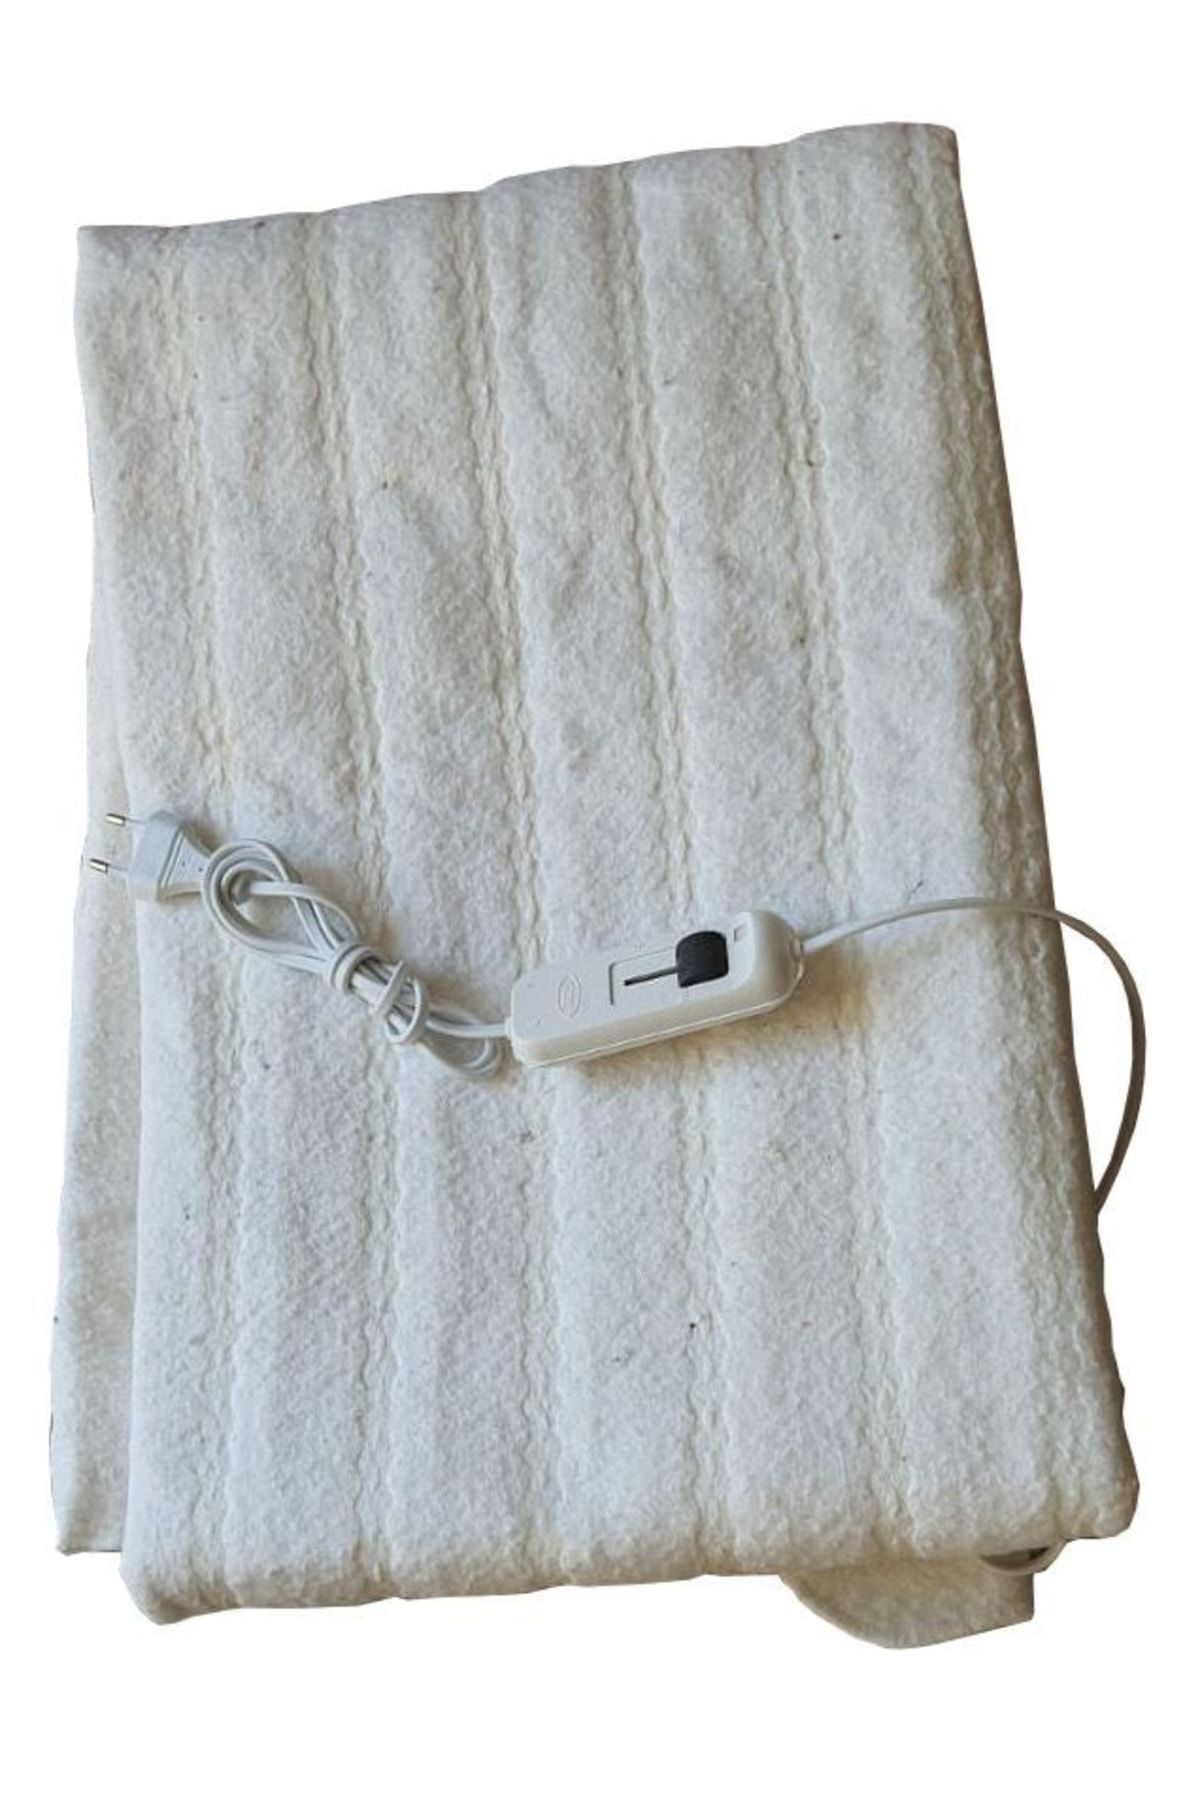 Mor Minder Elektrikli Battaniye (120X160) Beyaz Keçe Kumaş Çift Kişilik